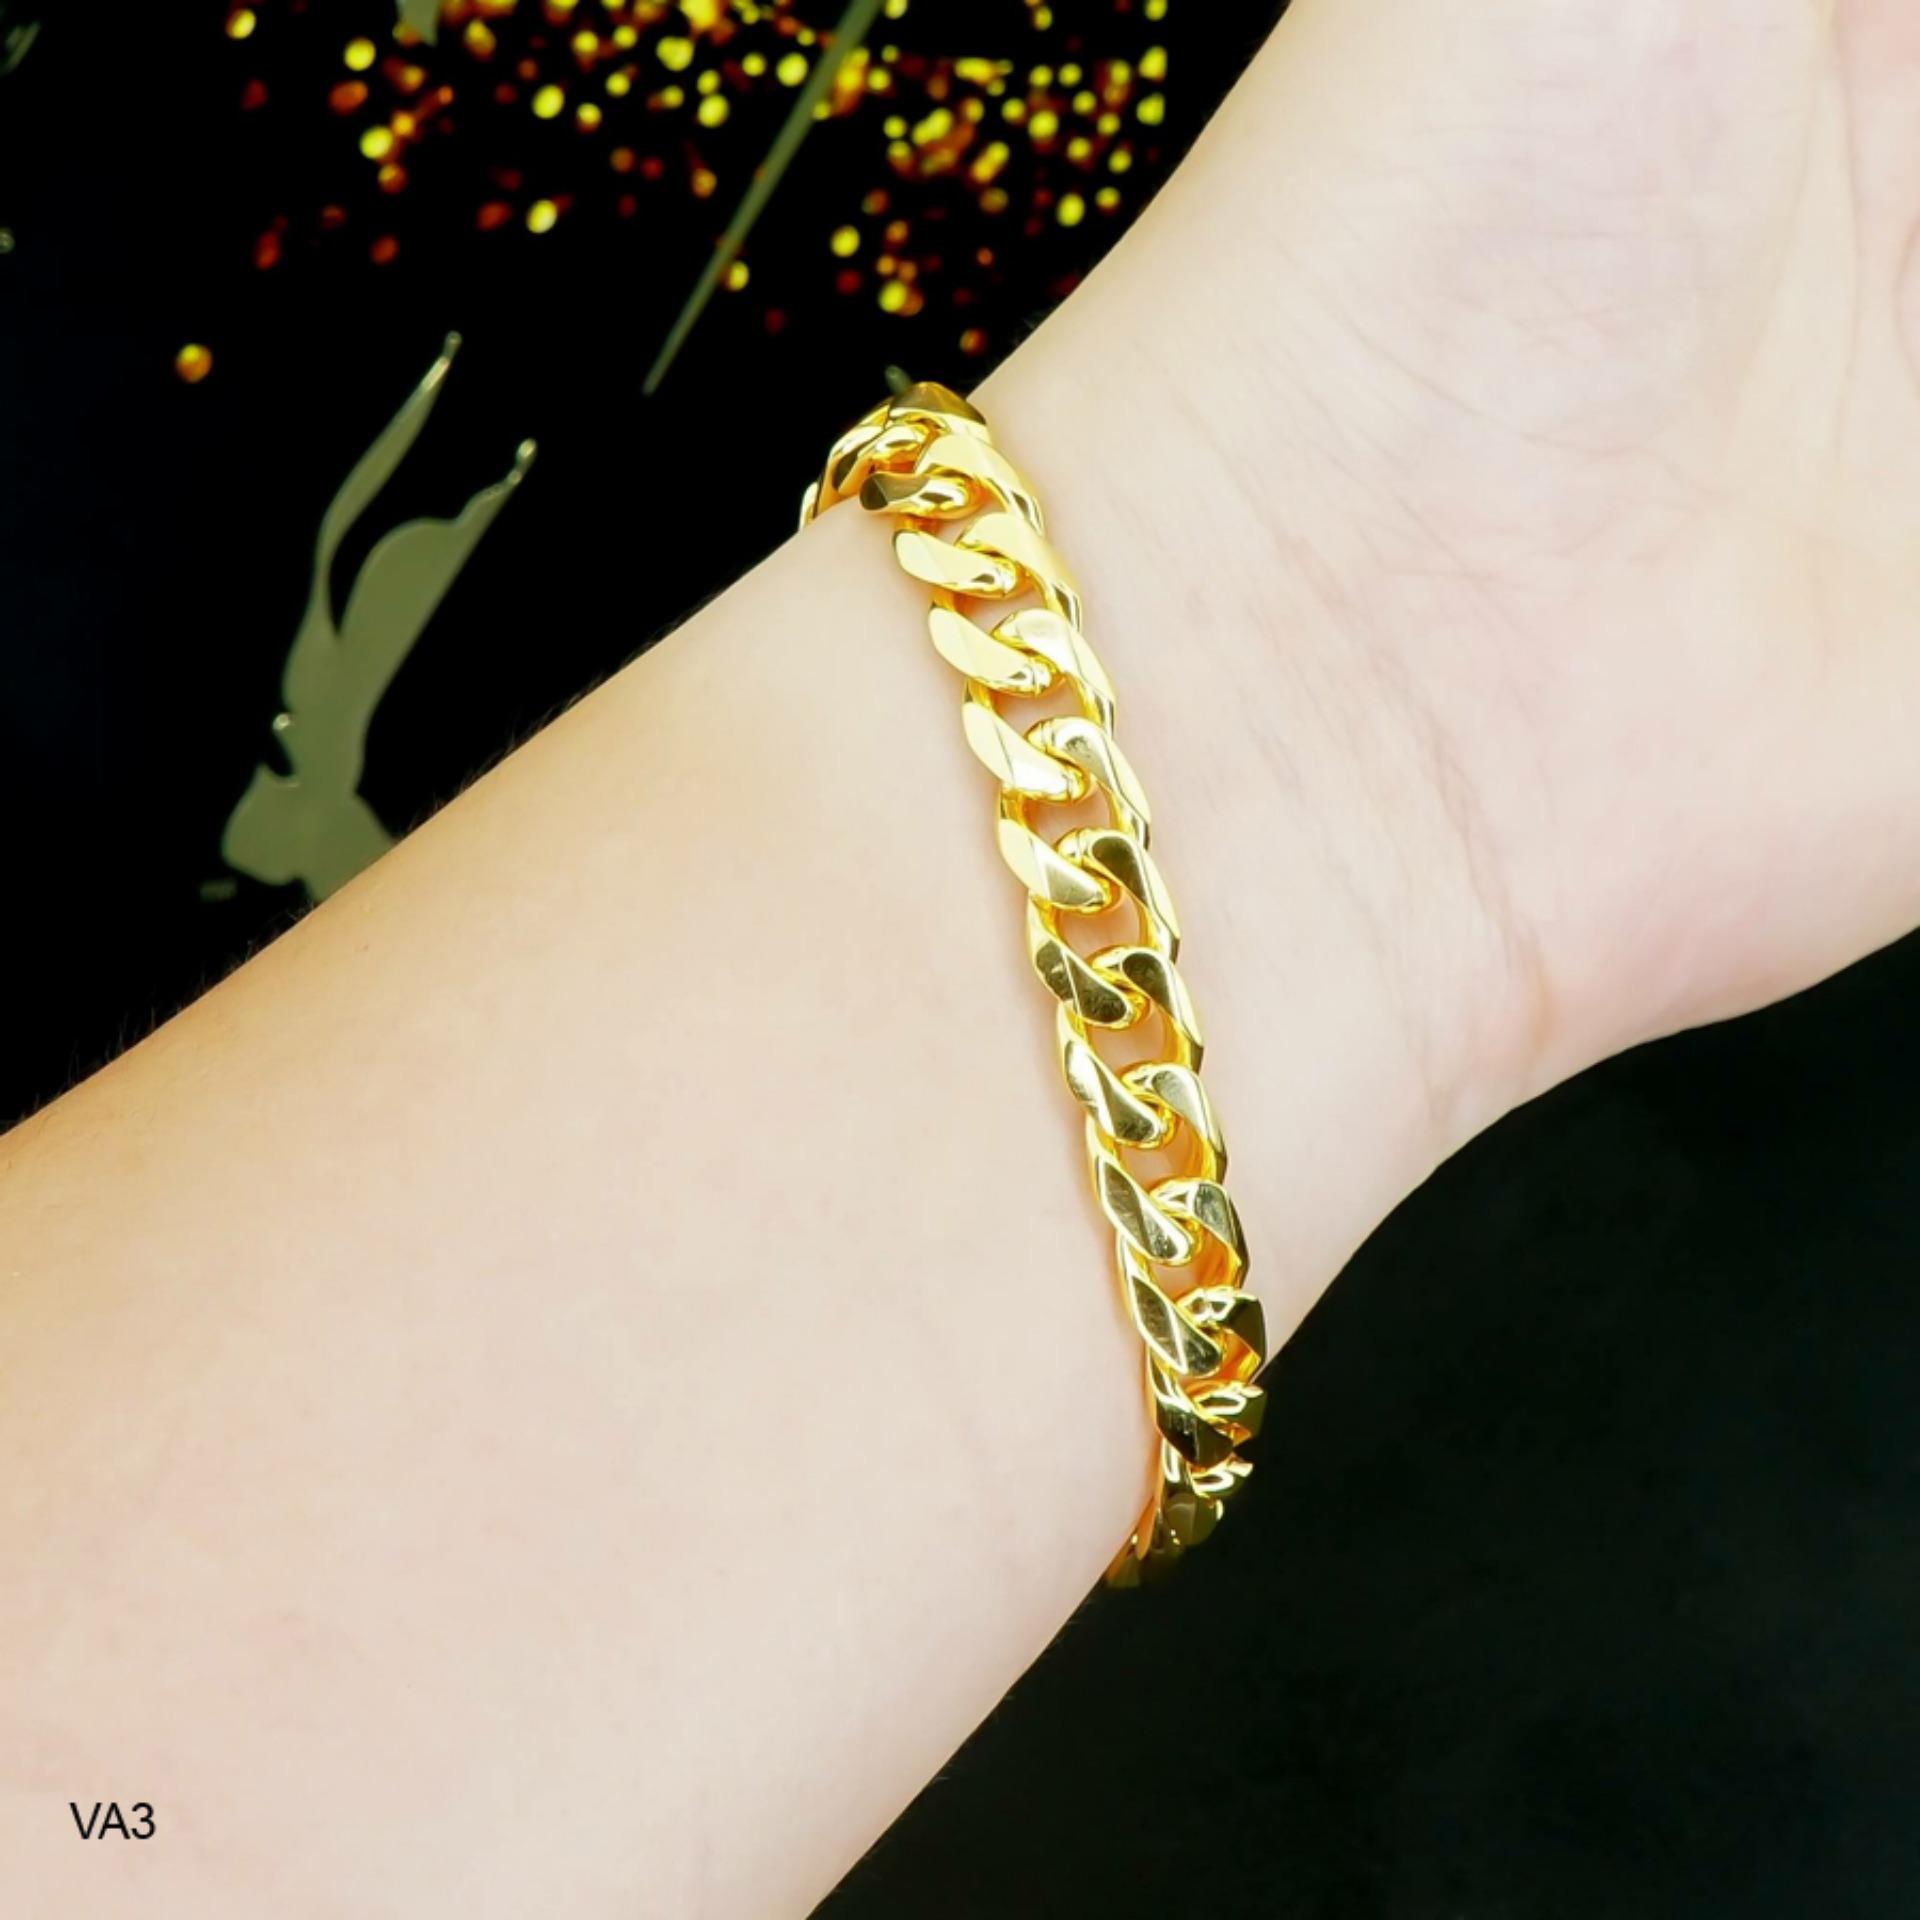 Lắc tay vàng nữ dây xích thời thượng: Cùng sáng tạo, tô điểm cho phong cách thời thượng của bạn cùng mẫu lắc tay vàng nữ dây xích đầy cuốn hút. Với thiết kế tinh tế, chất liệu vàng 18K cao cấp, sản phẩm thật sự xứng đáng để bạn sở hữu.